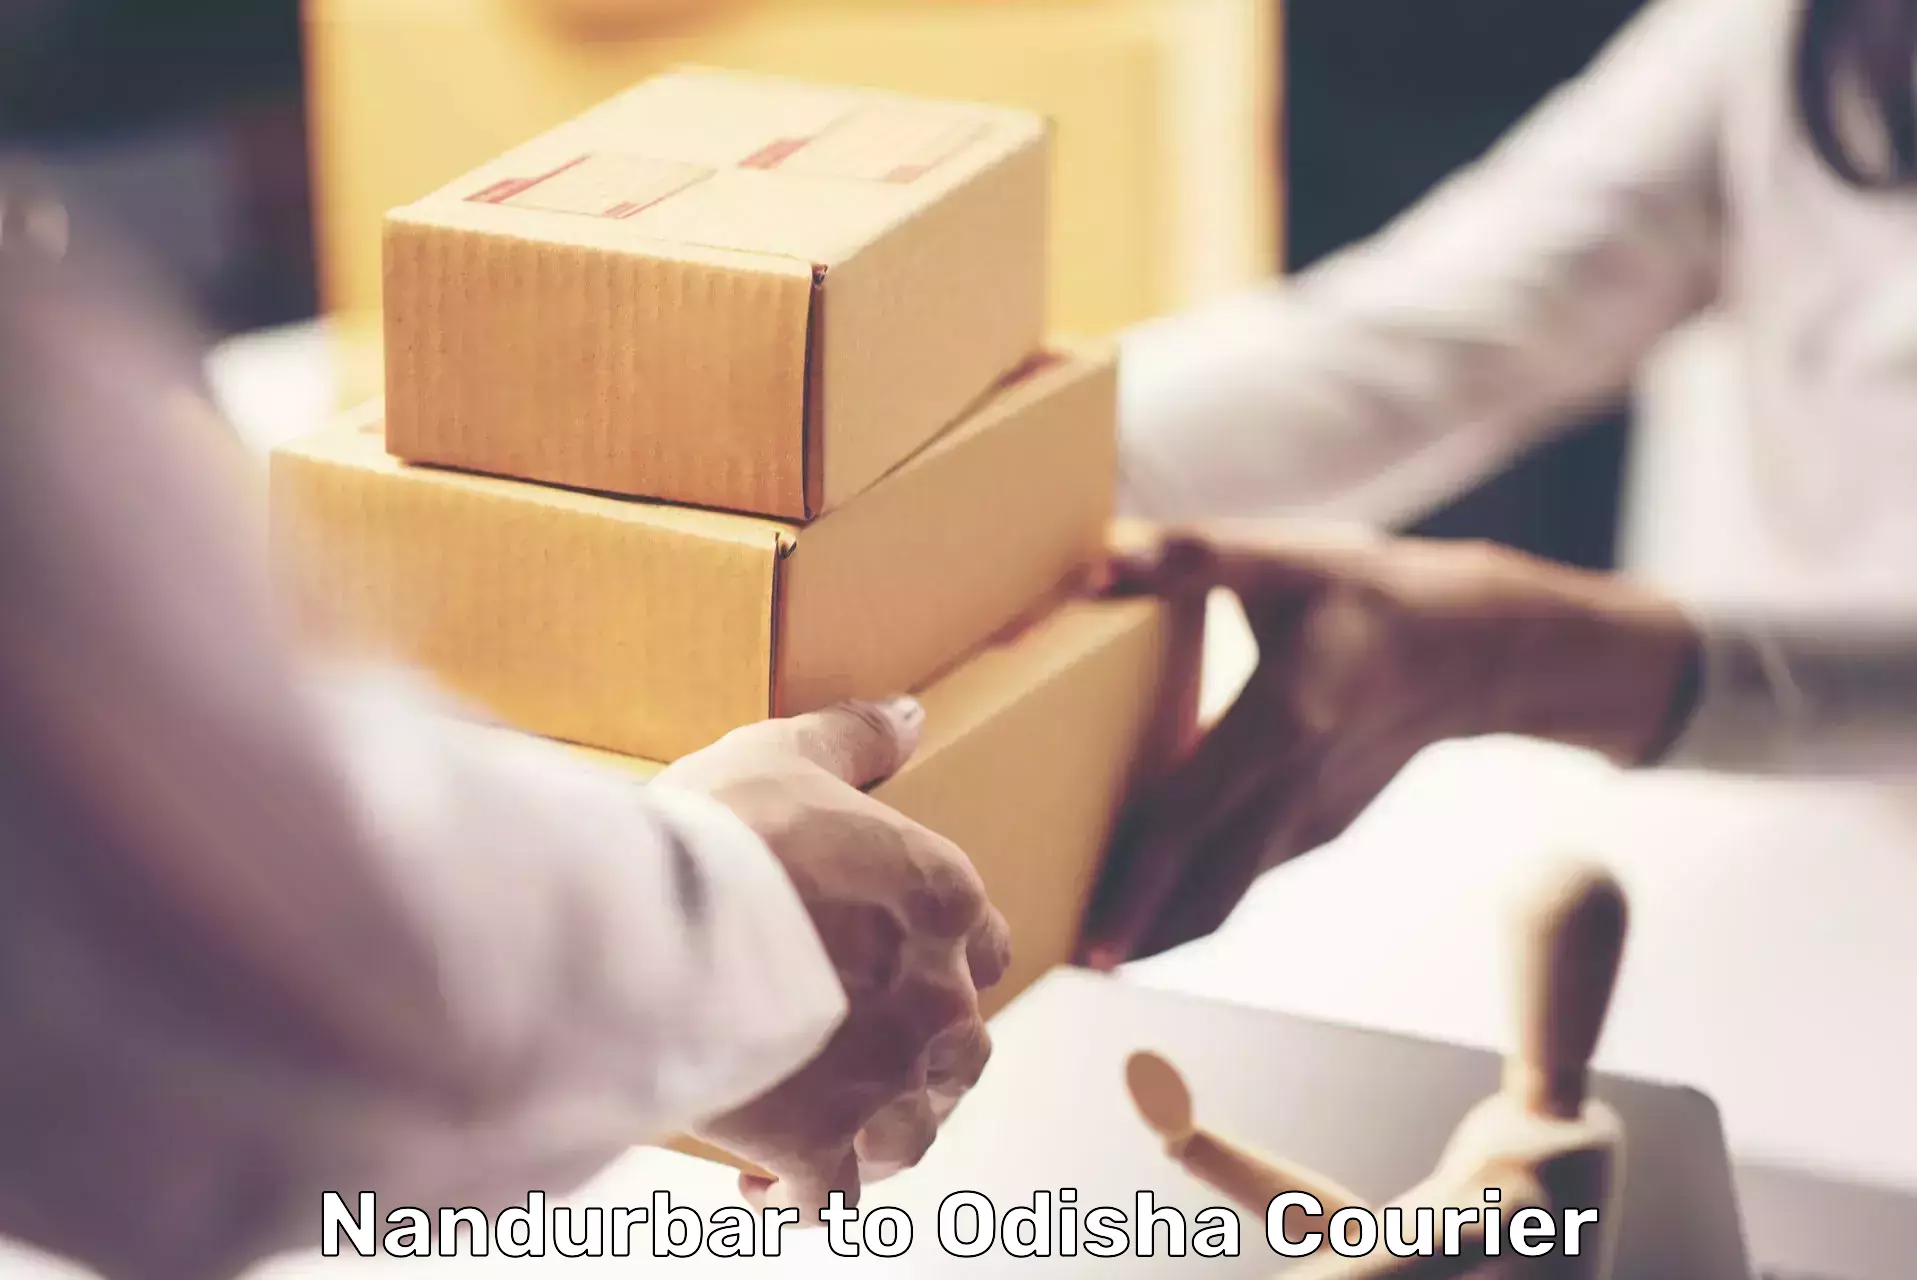 Customer-centric shipping in Nandurbar to Sonepur